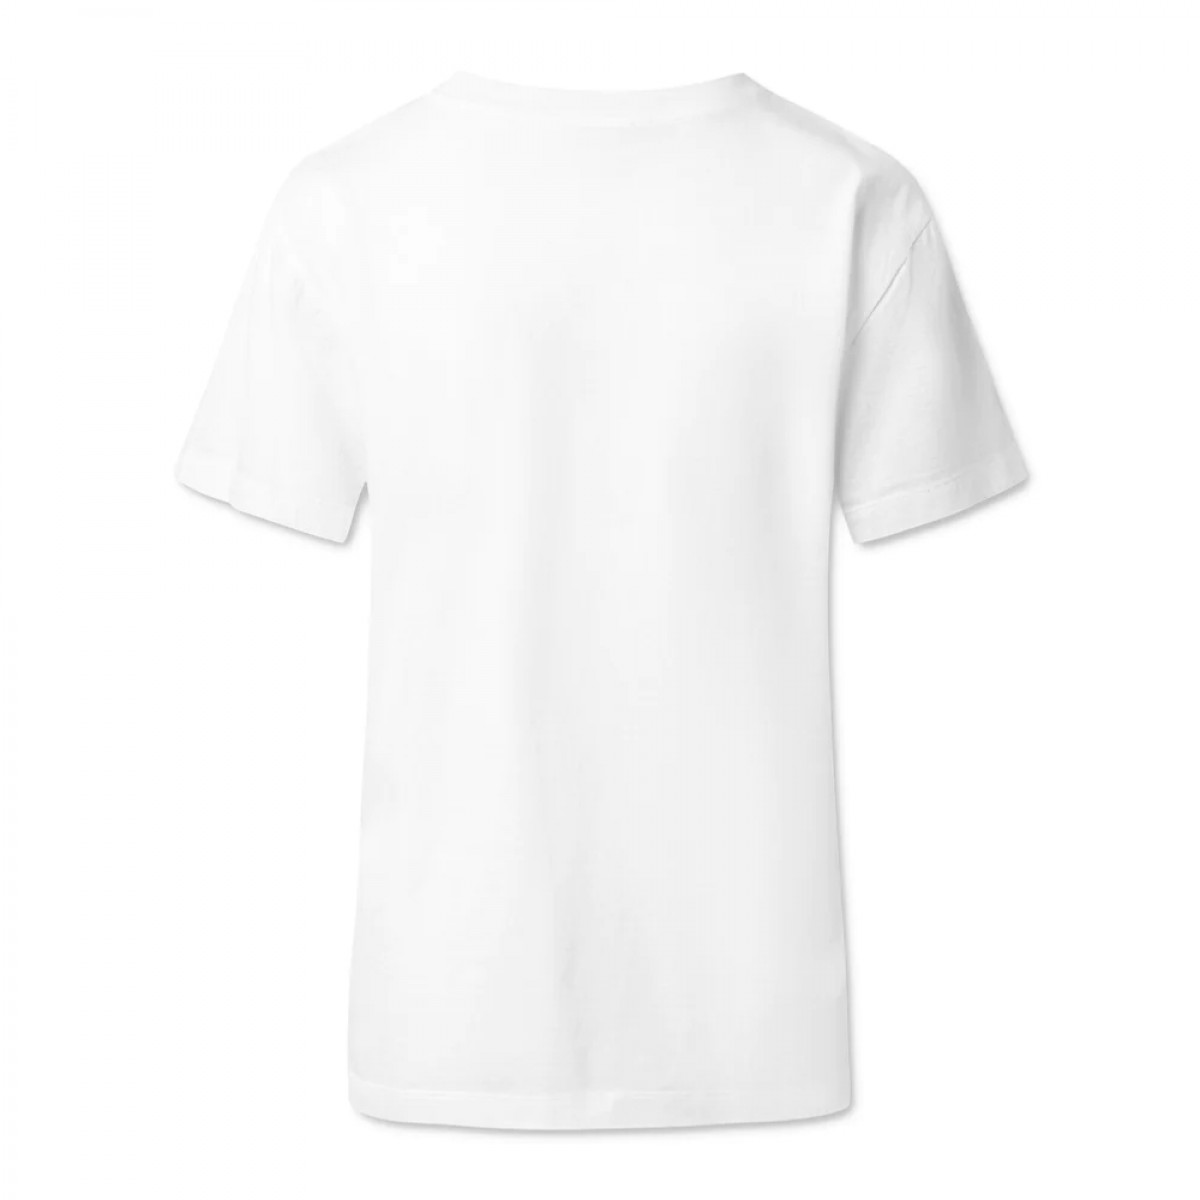 donna t-shirt - white - ryg